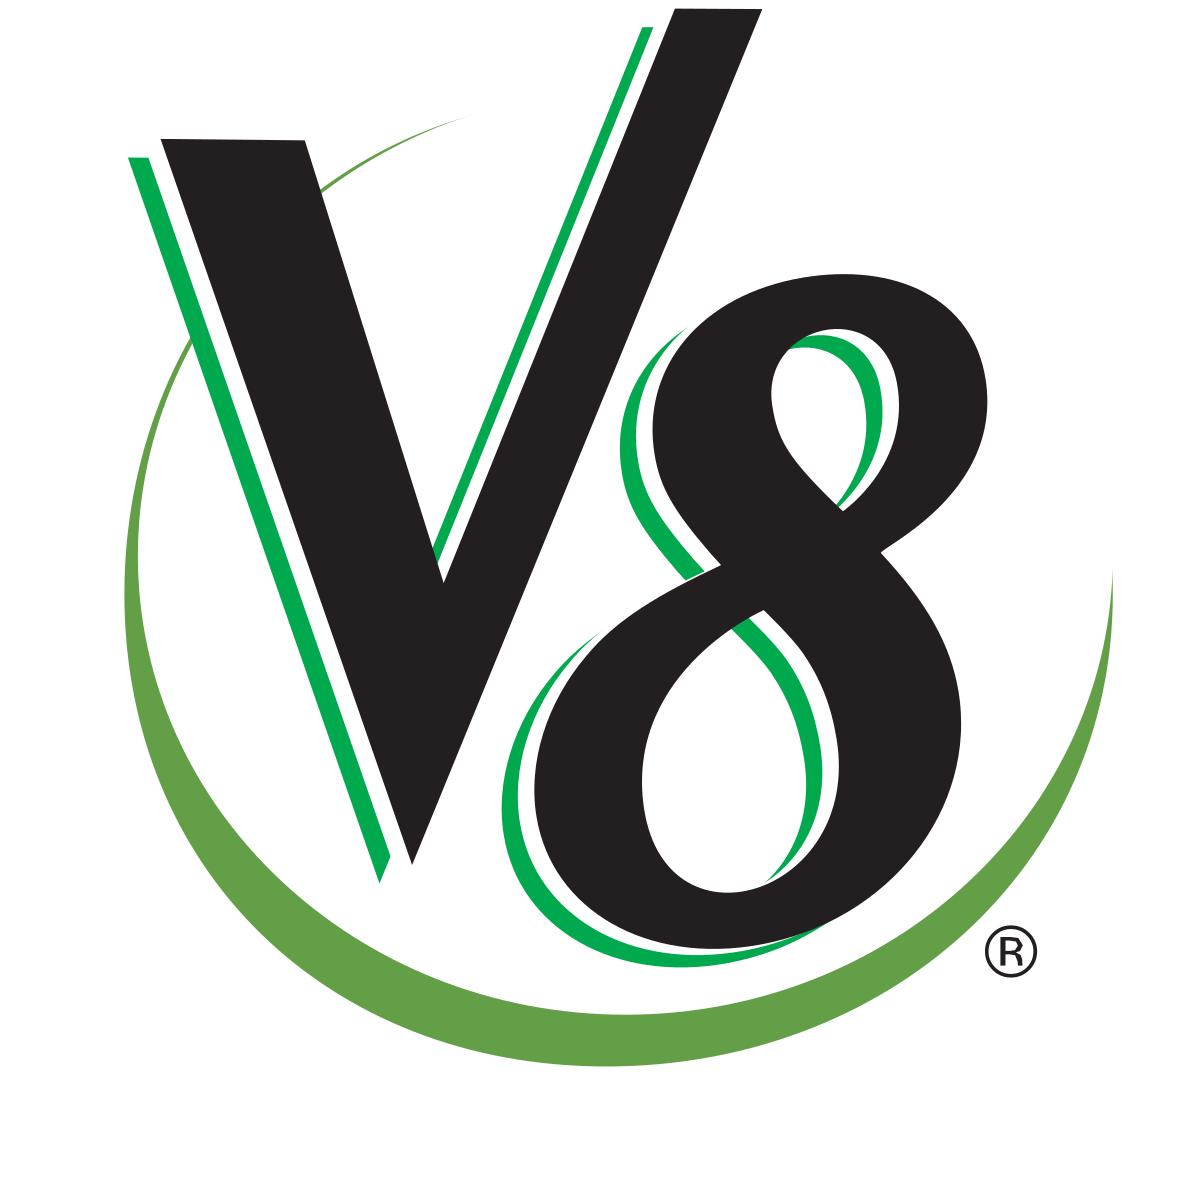 V8_juicebrand_logo.svg.png